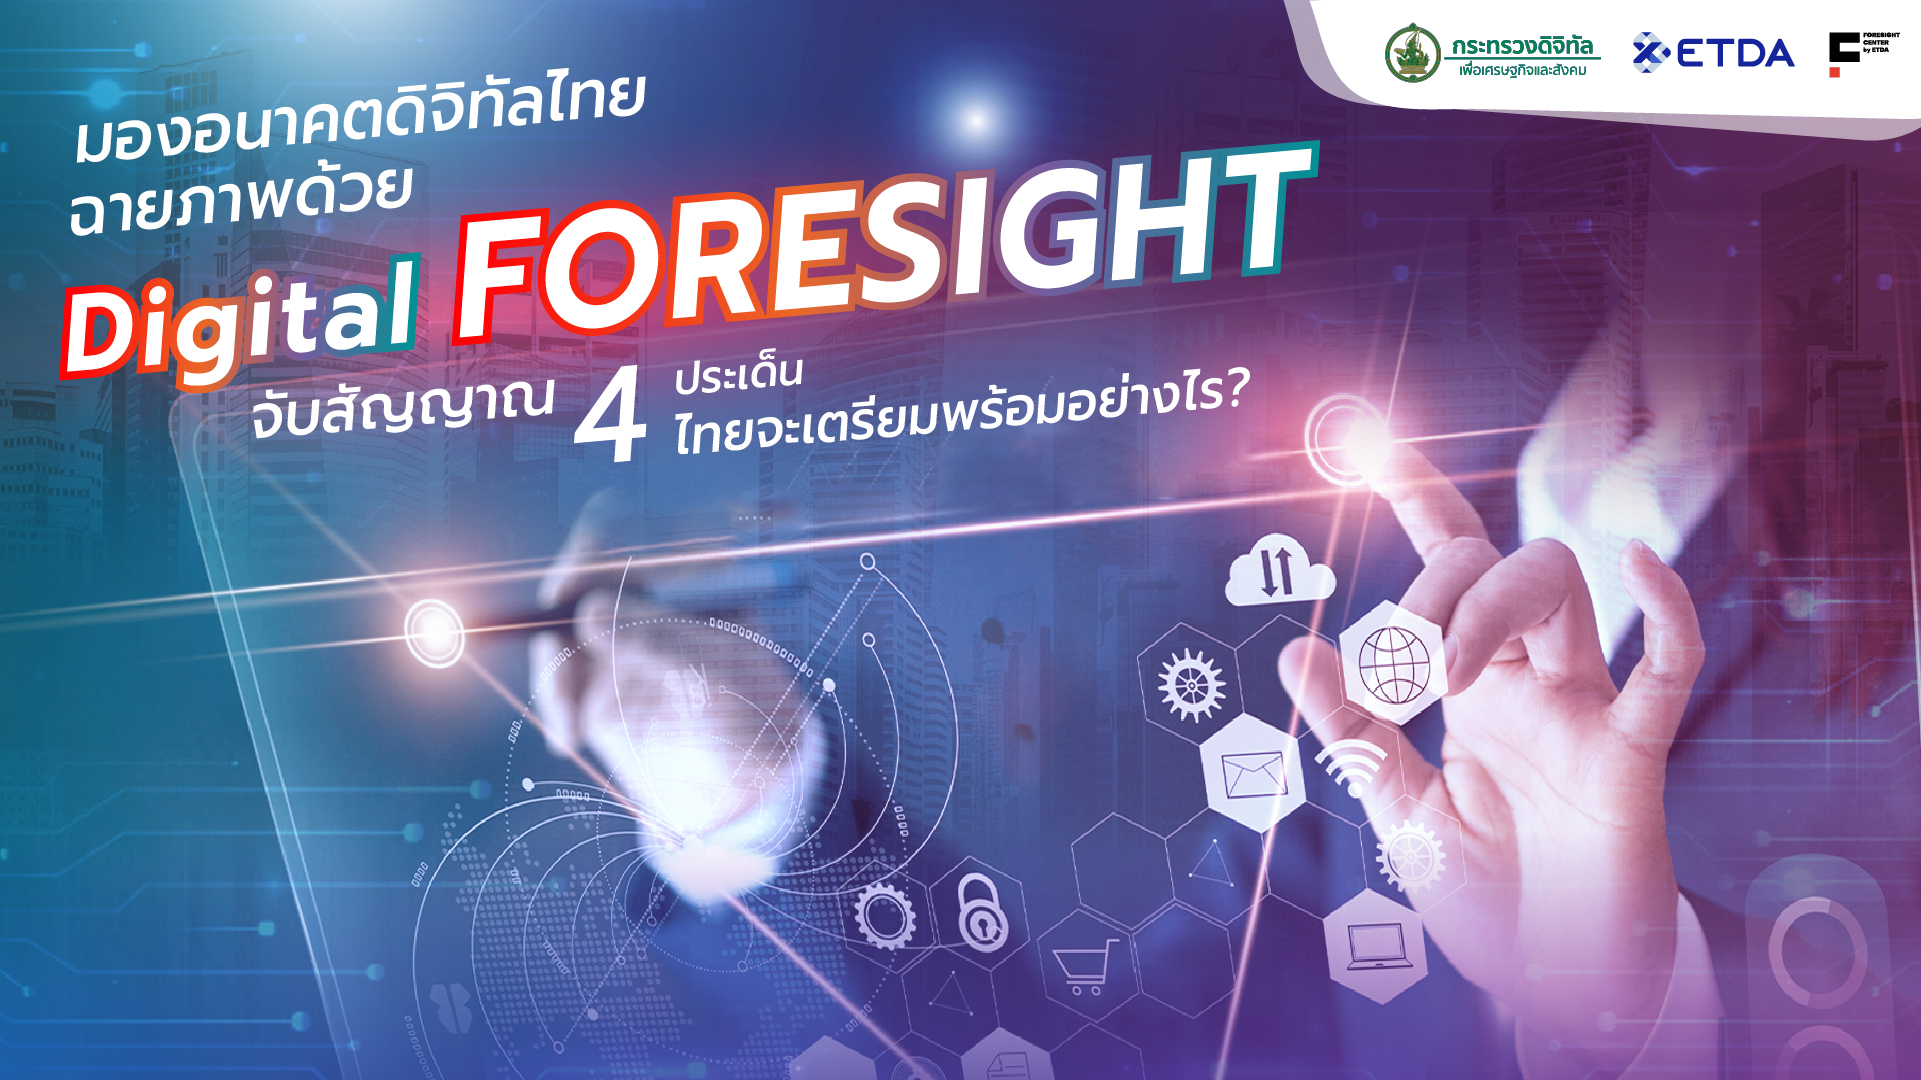 มองอนาคตดิจิทัลไทย ฉายภาพด้วย Digital Foresight  จับสัญญาณ 4 ประเด็น ไทยจะเตรียมพร้อมอย่างไร ?